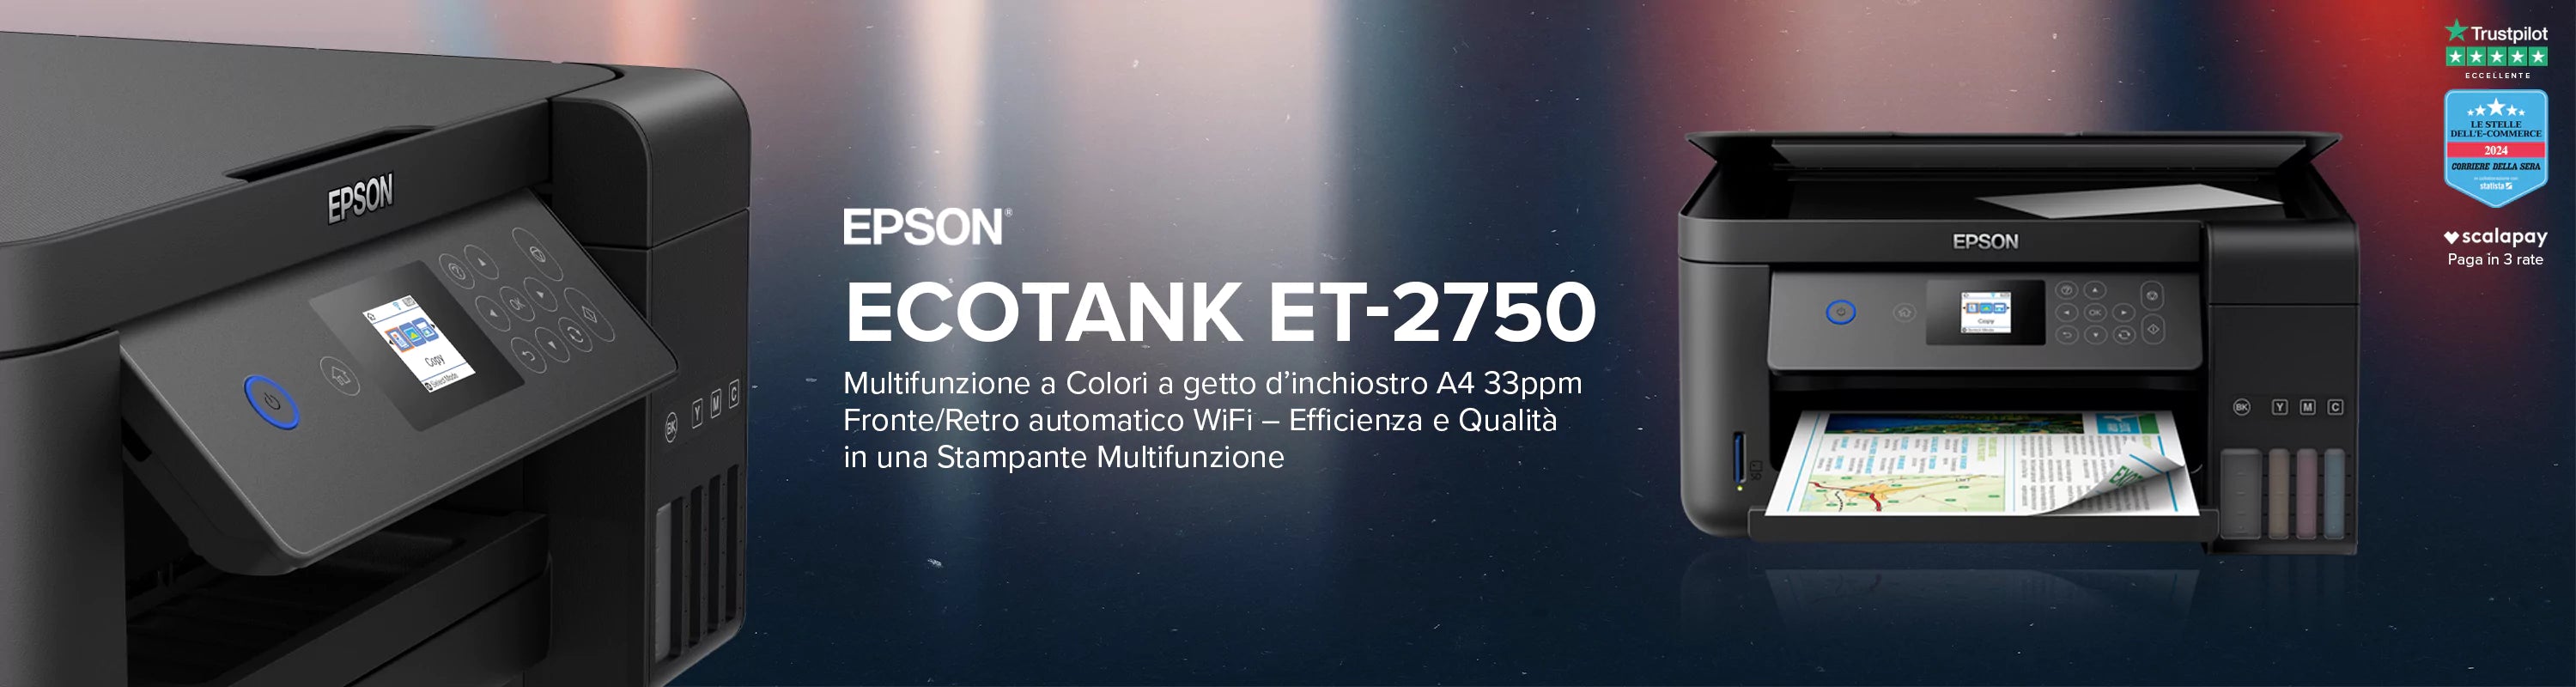 Epson EcoTank ET-2750 Multifunzione a Colori a getto d’inchiostro A4 33ppm Fronte/Retro automatico WiFi – Efficienza e Qualità in una Stampante Multifunzione